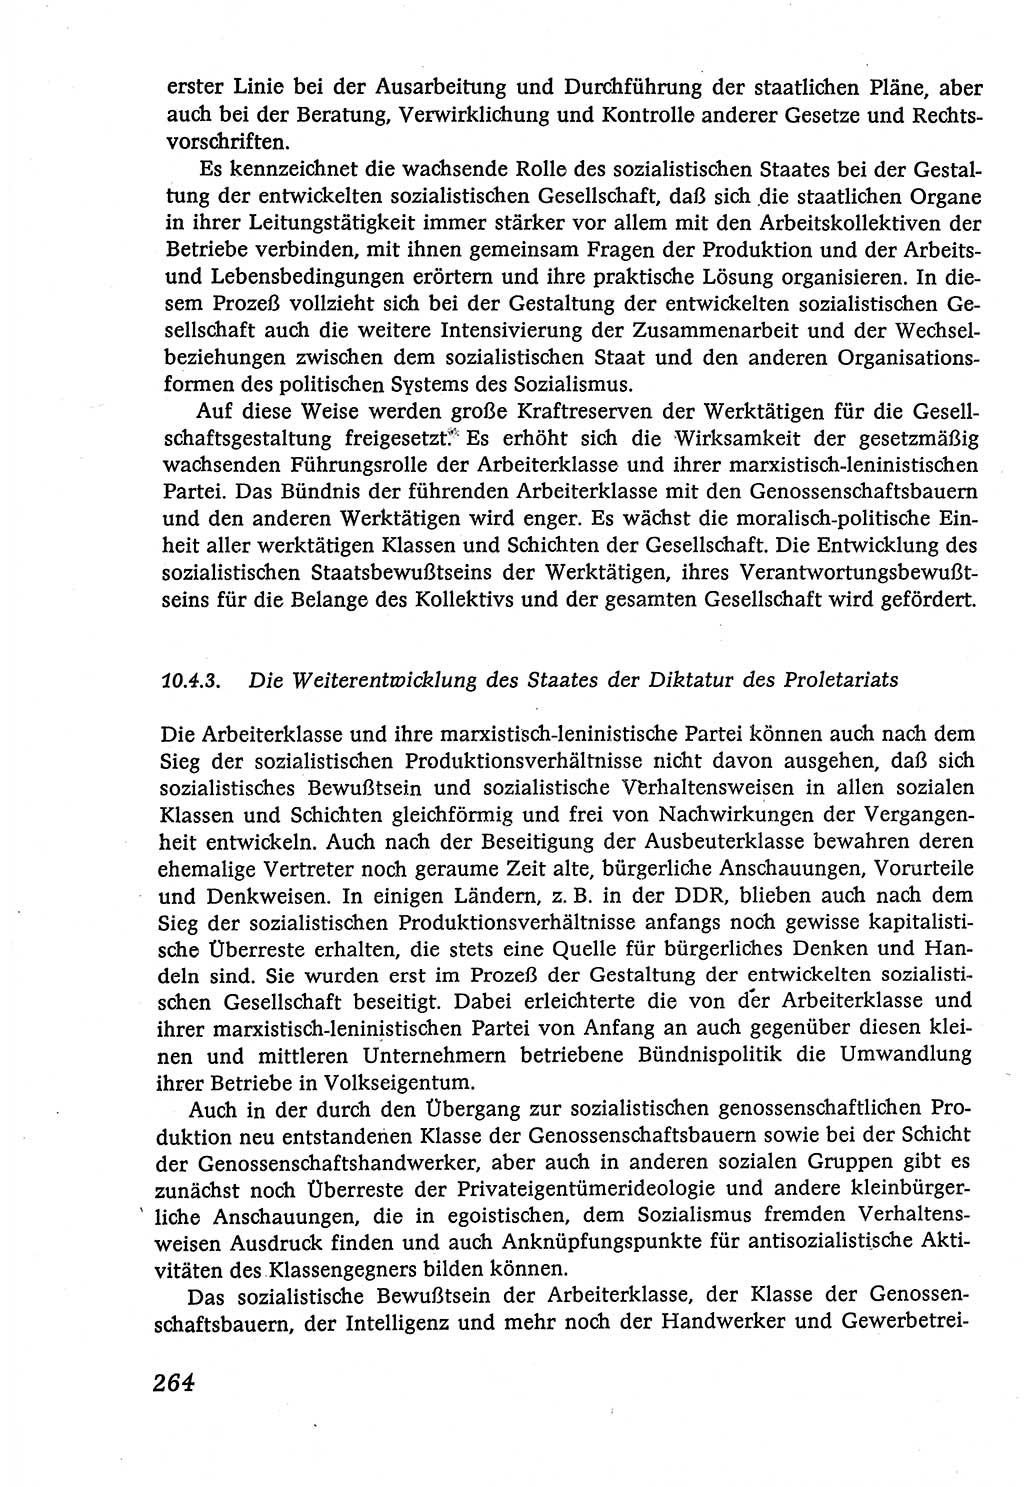 Marxistisch-leninistische (ML) Staats- und Rechtstheorie [Deutsche Demokratische Republik (DDR)], Lehrbuch 1980, Seite 264 (ML St.-R.-Th. DDR Lb. 1980, S. 264)